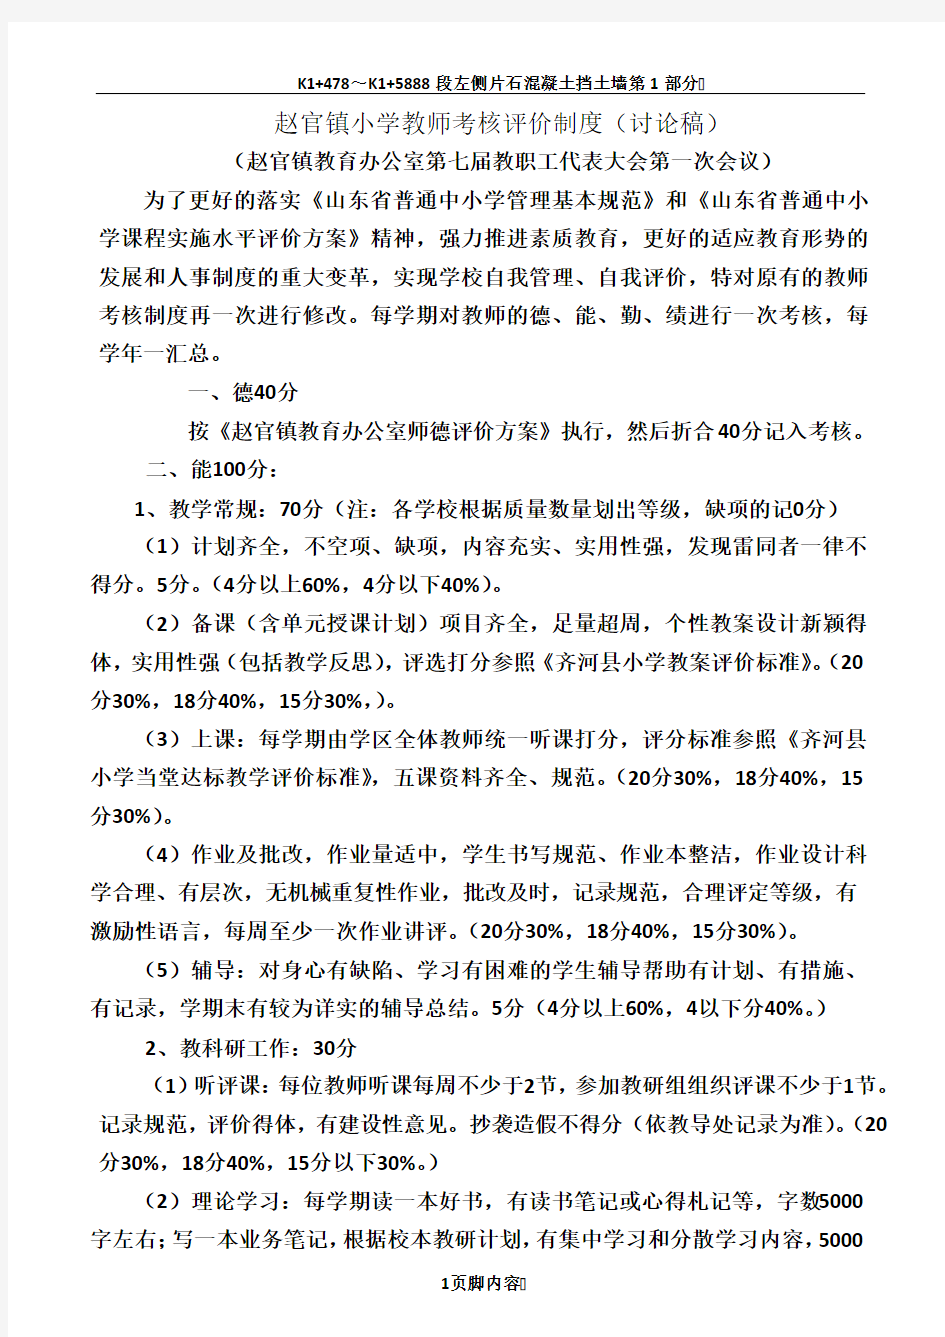 赵官镇小学教师考核评价制度(2013讨论稿)